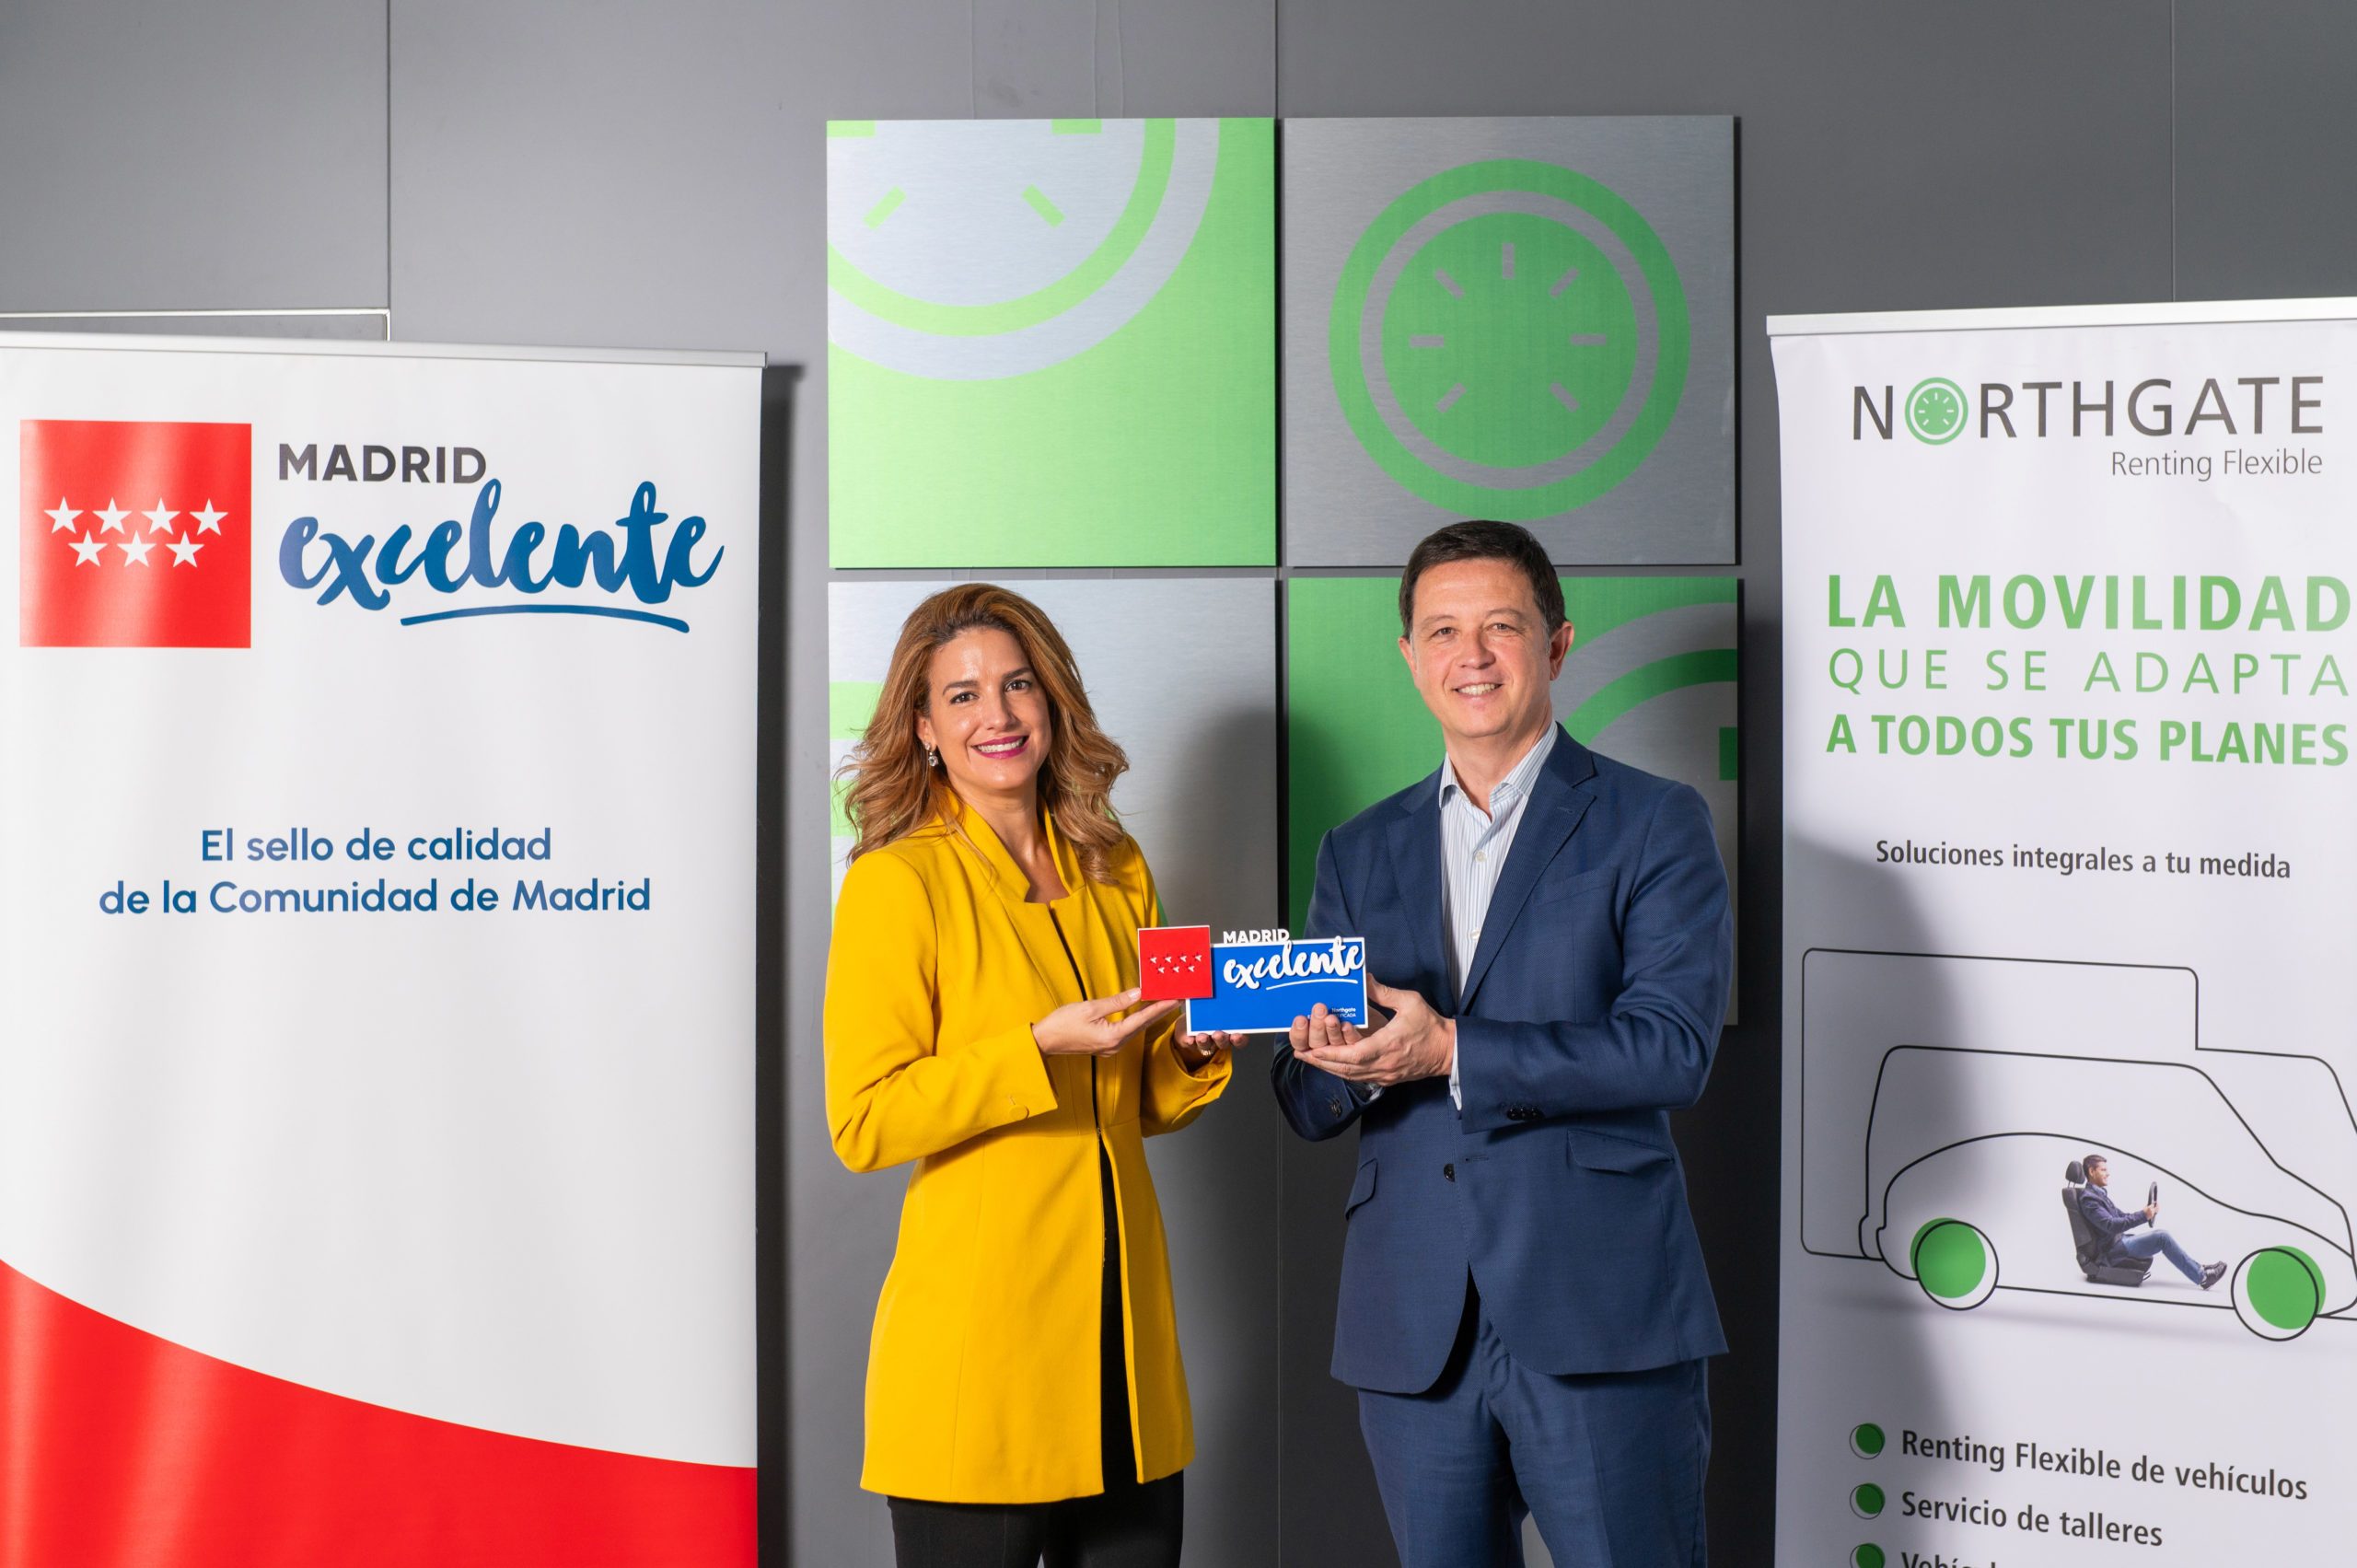 Northgate obtiene el sello “Madrid Excelente”, que reconoce la excelencia en gestión e innovación empresarial